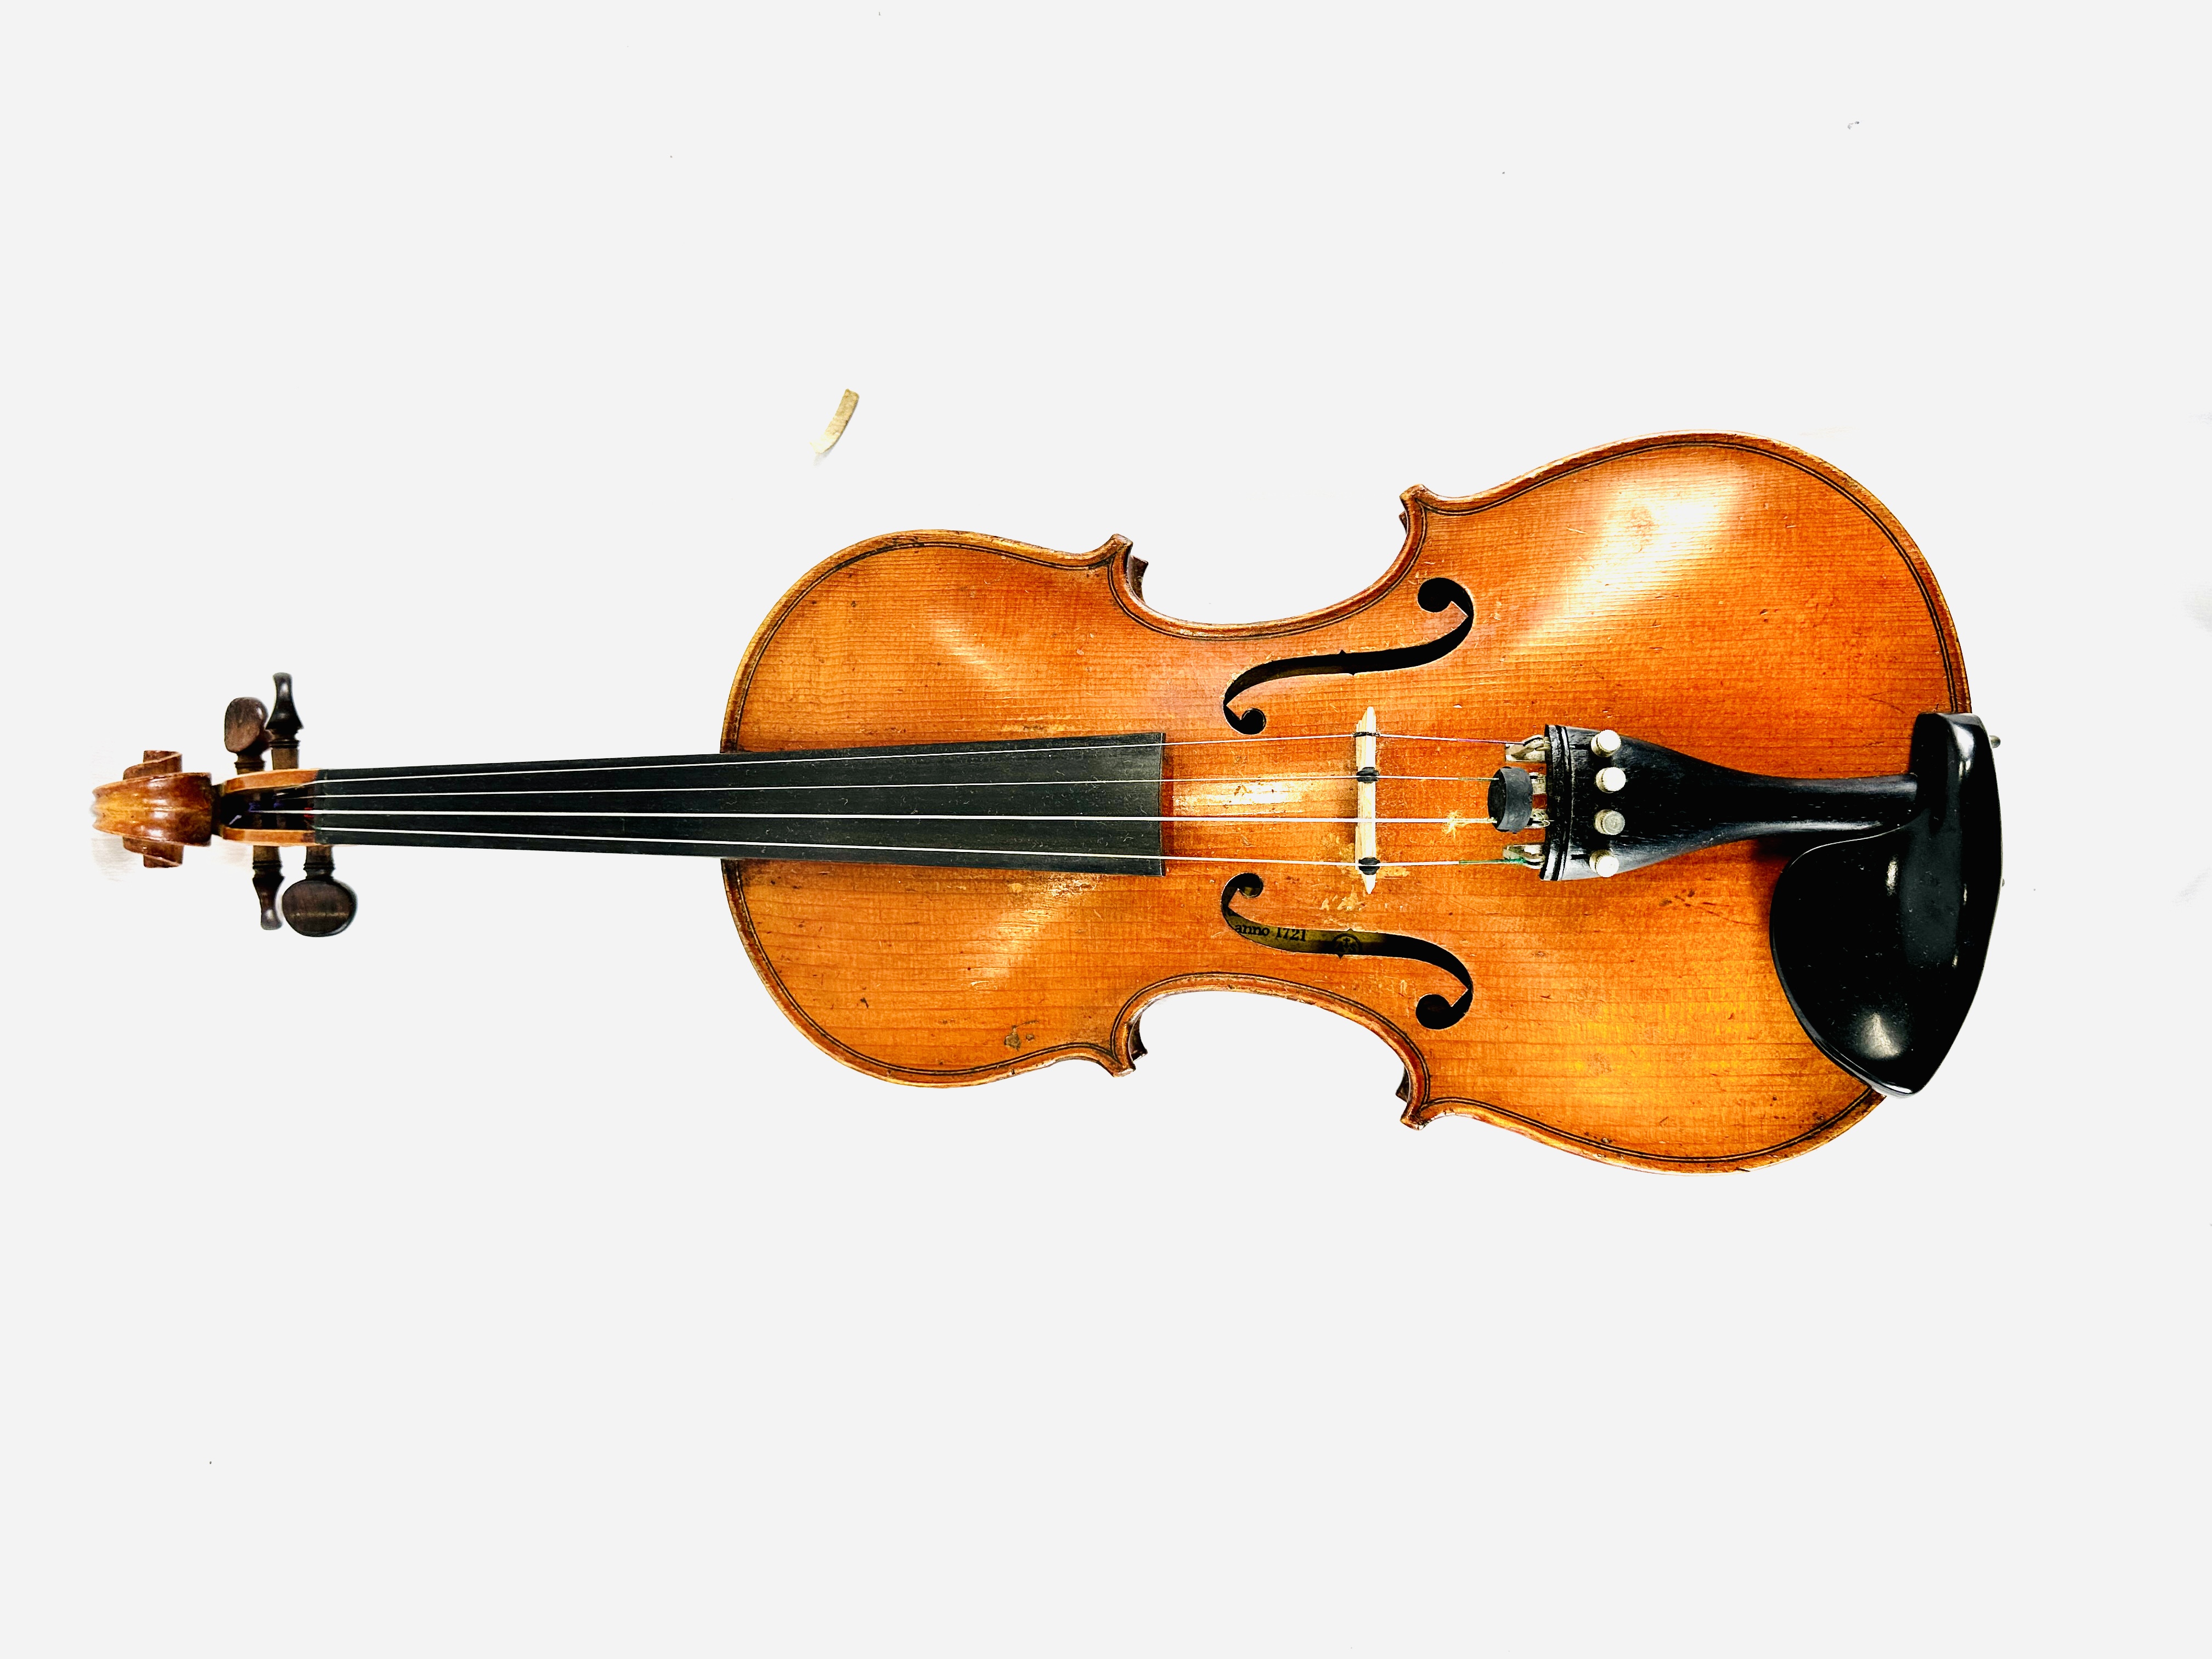 Stradivarius Cremonensis violin - Image 2 of 5